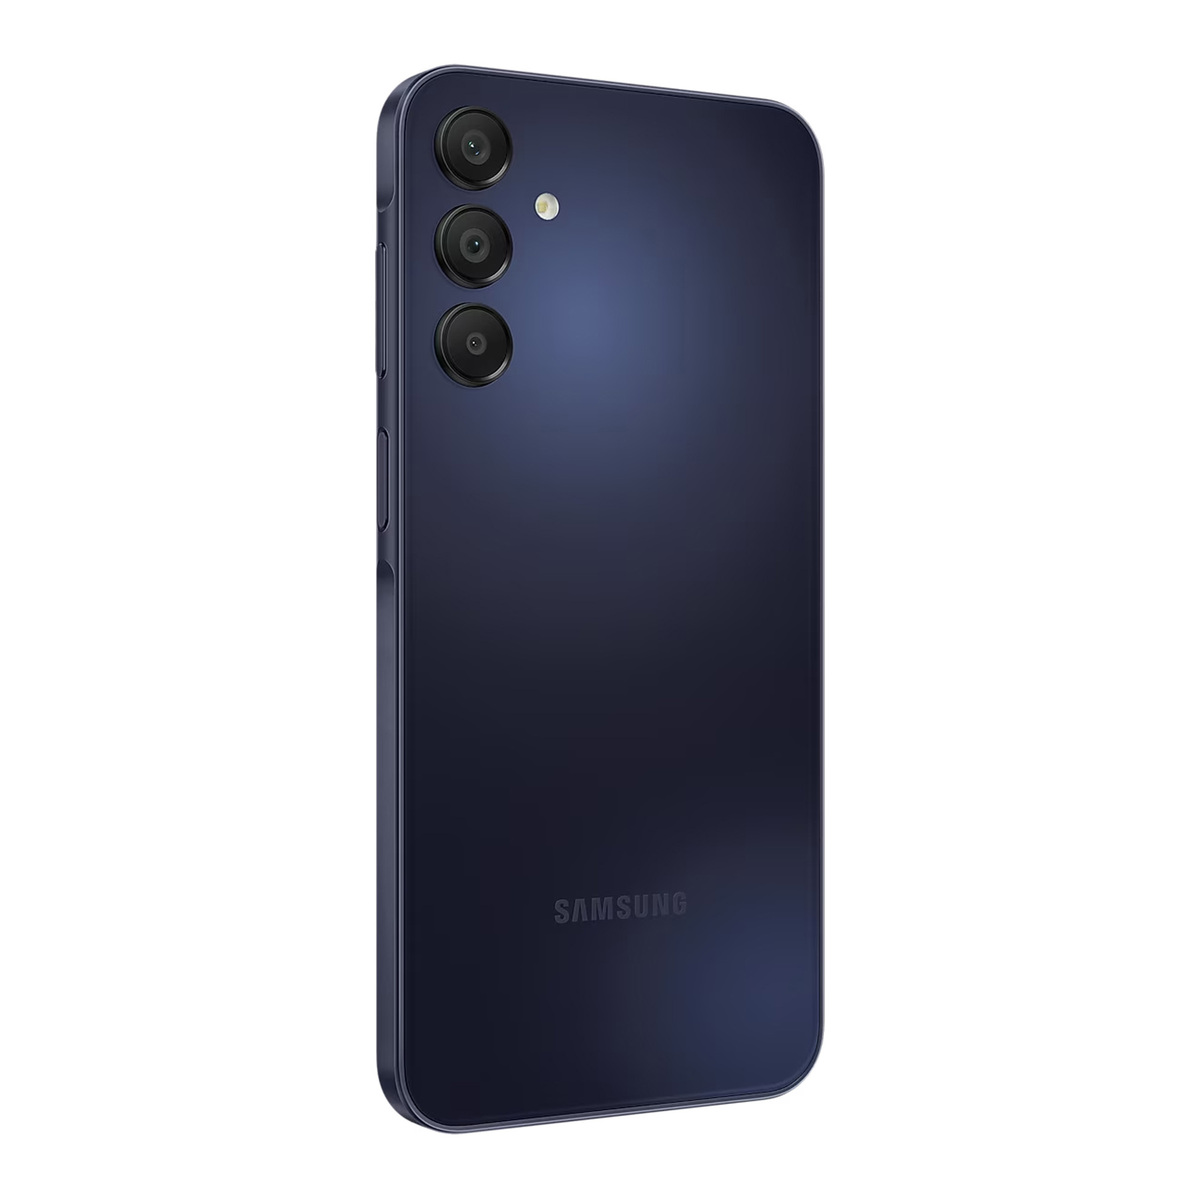 Samsung Galaxy A15 Dual SIM 4G Smartphone, 6 GB RAM, 128 GB Storage, Blue Black